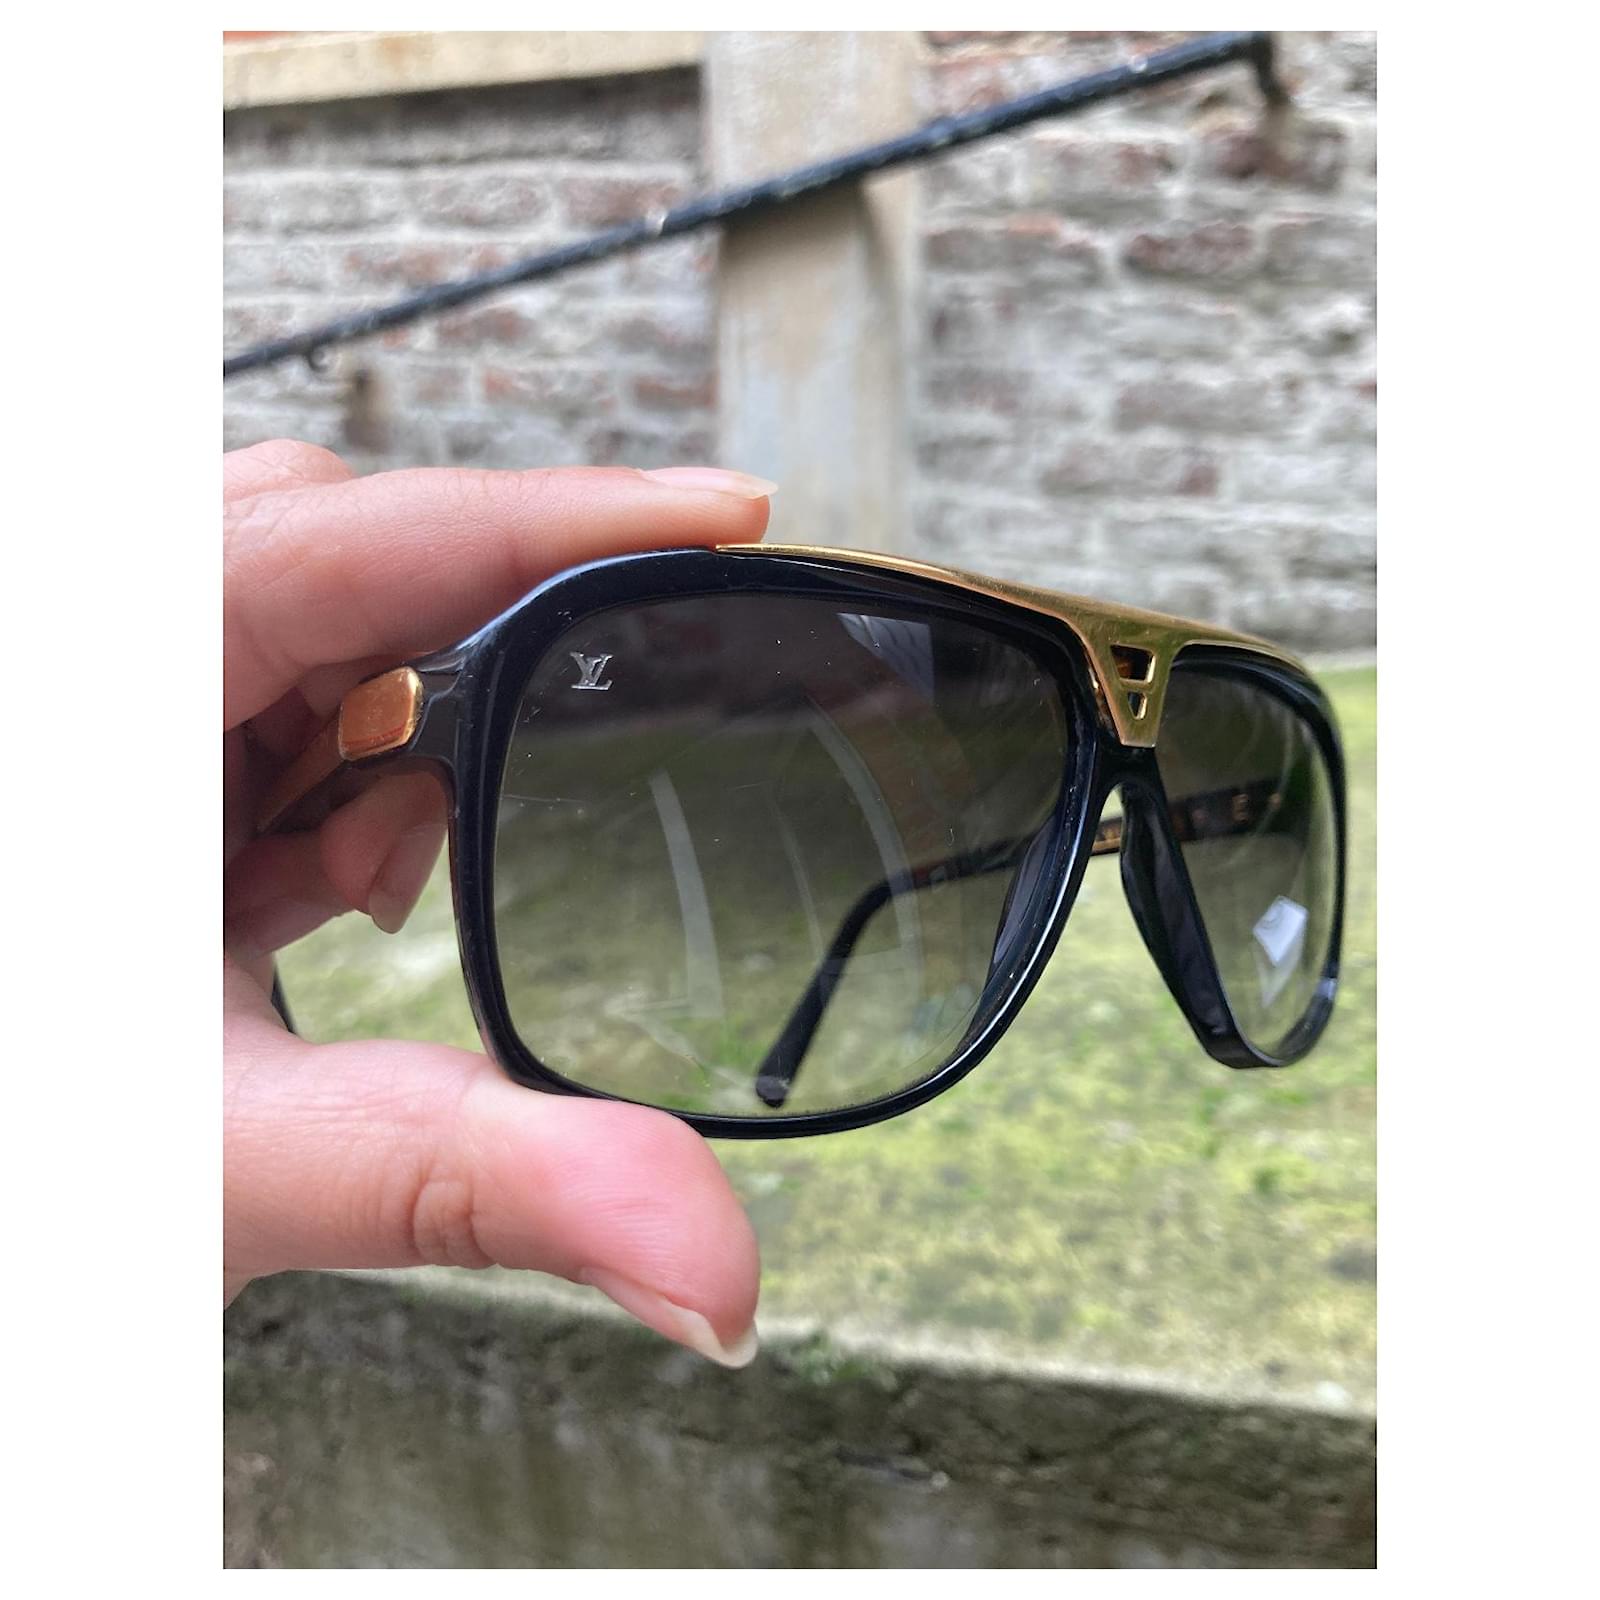 Louis Vuitton Evidence Sonnenbrille Herren mit OVP